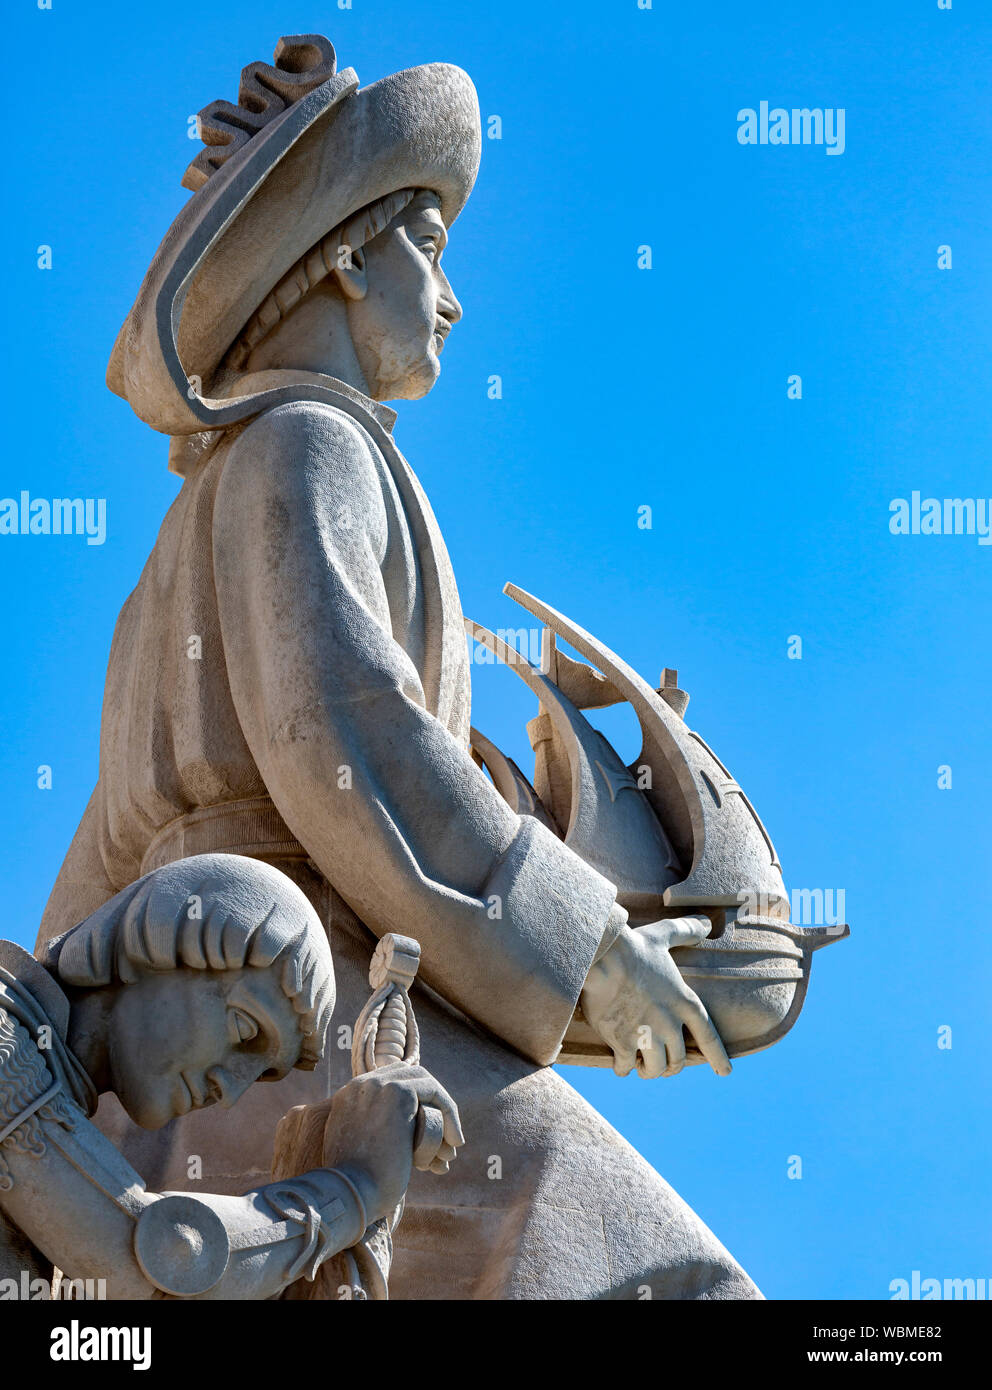 La figura di Enrico il Navigatore tenendo una nave per il monumento alle scoperte del nuovo mondo, Belem, Lisbona, Portogallo. Foto Stock